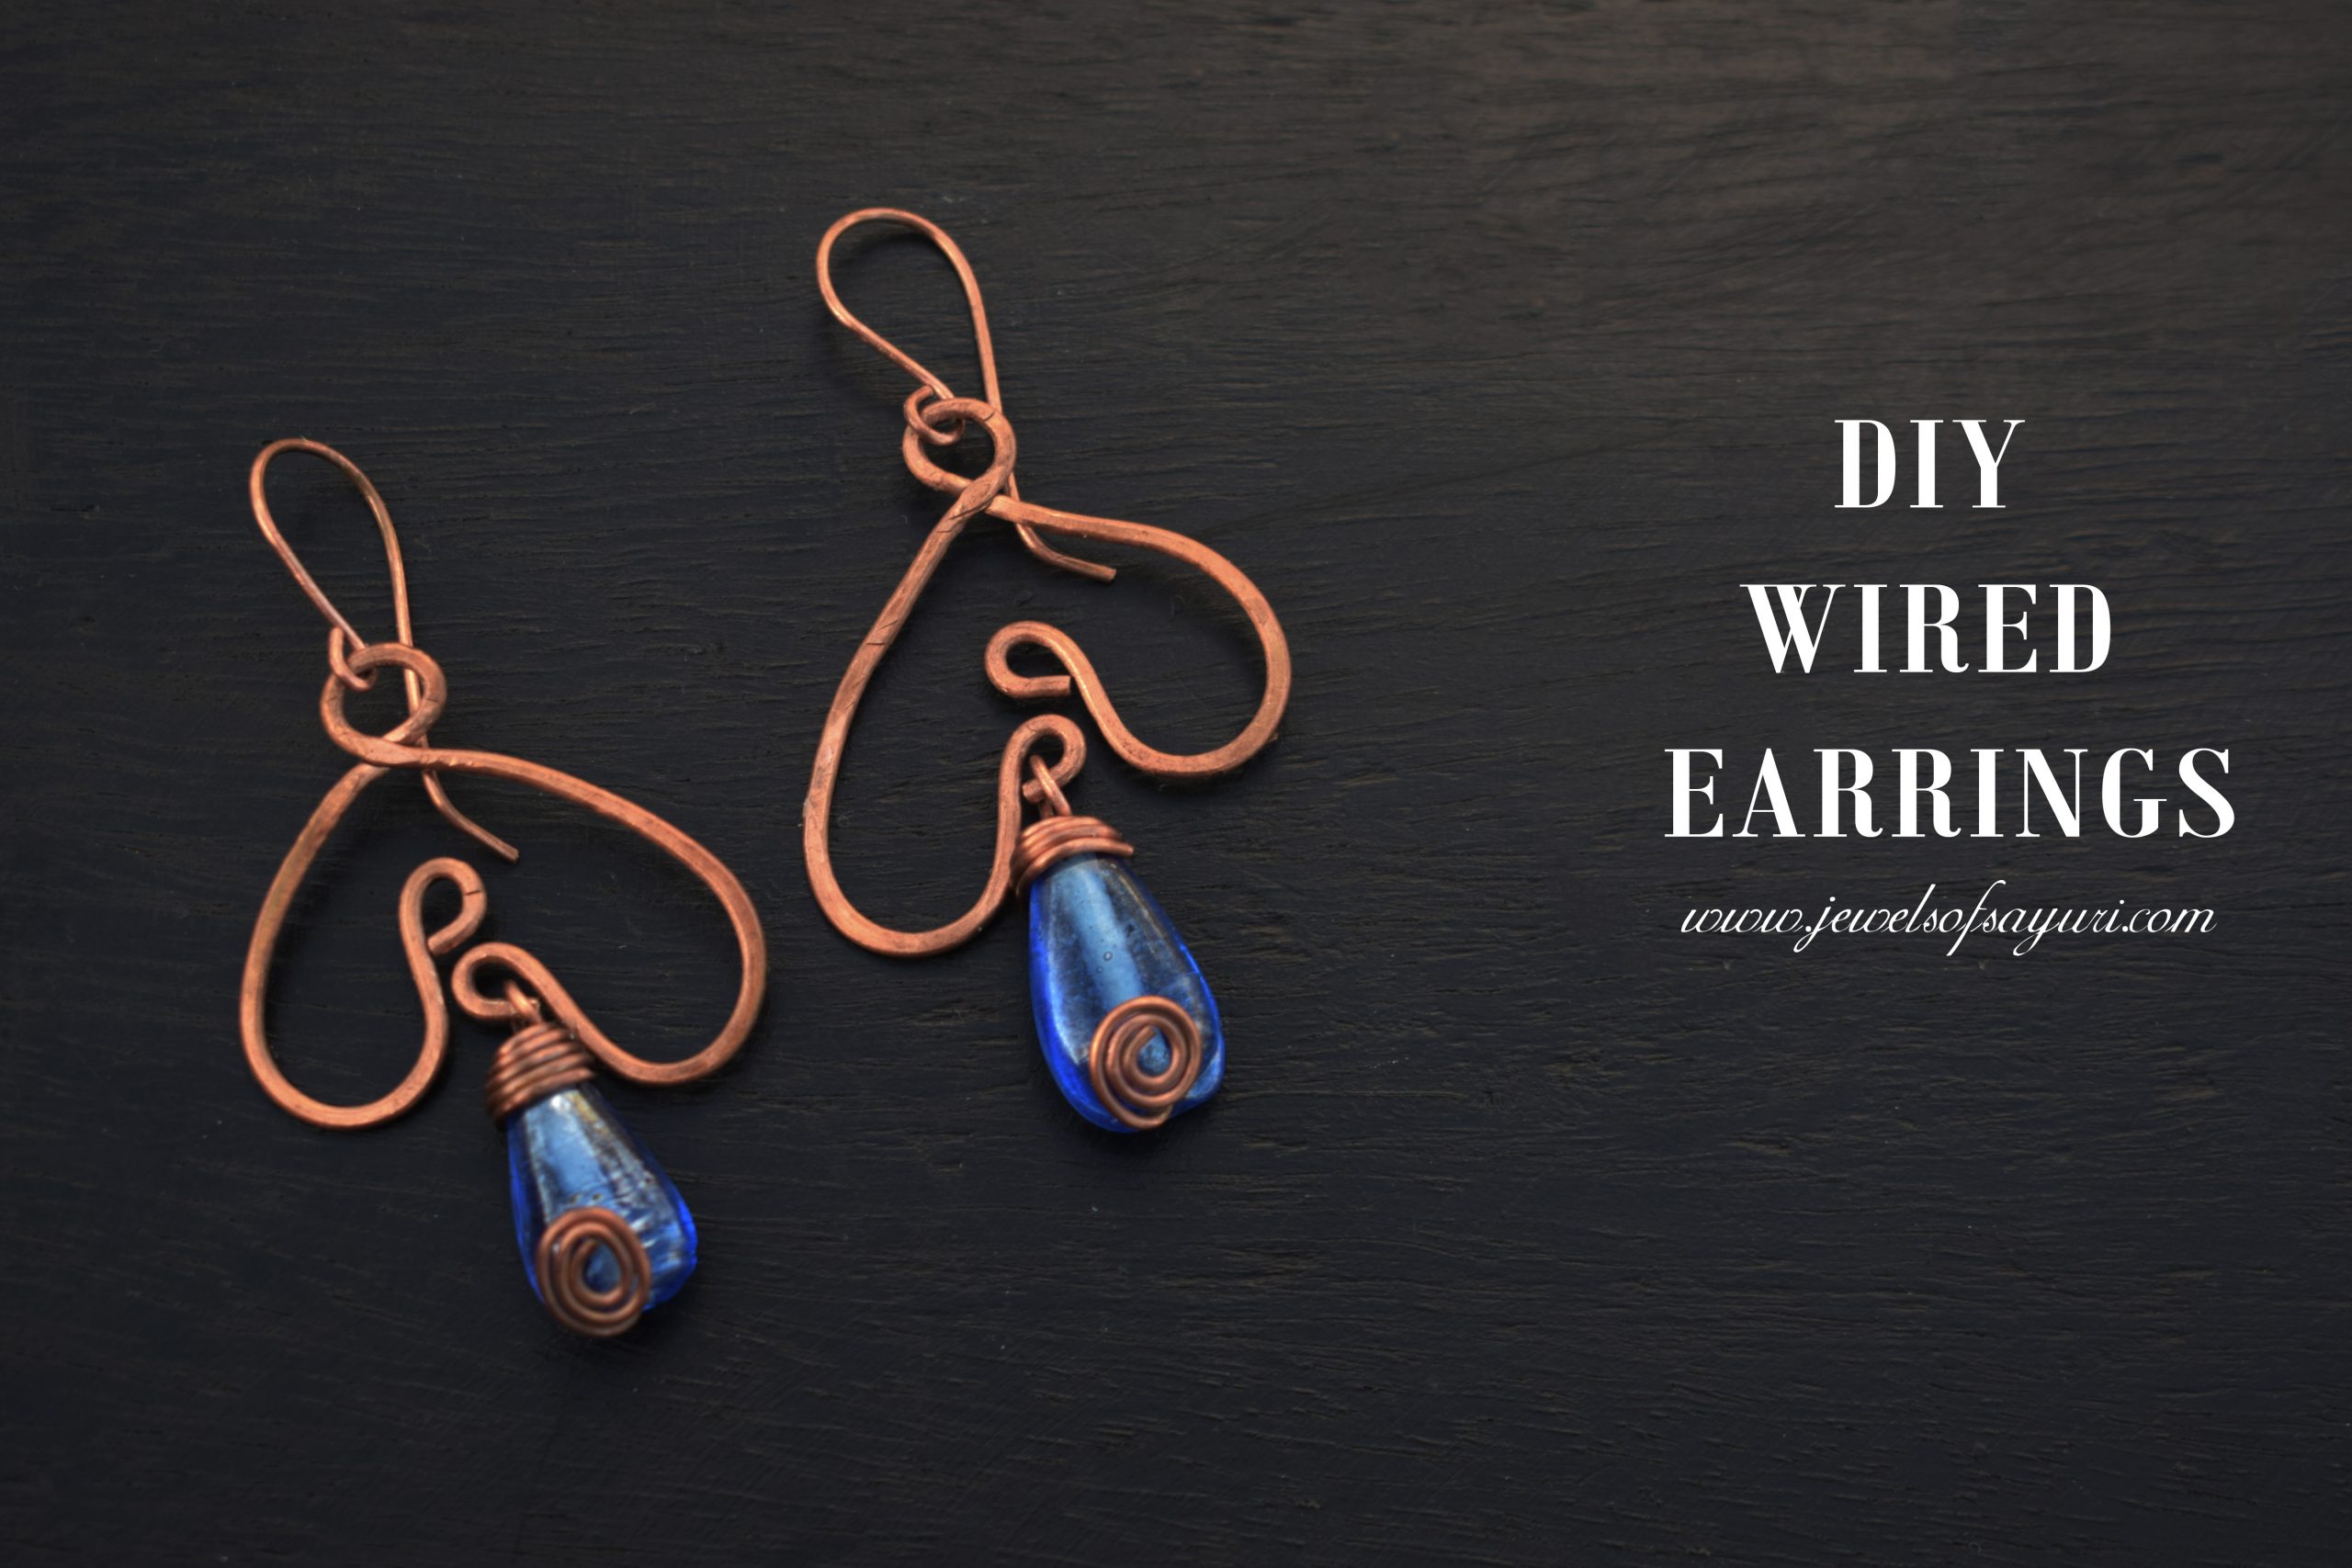 DIY wired earrings in blue tutorial